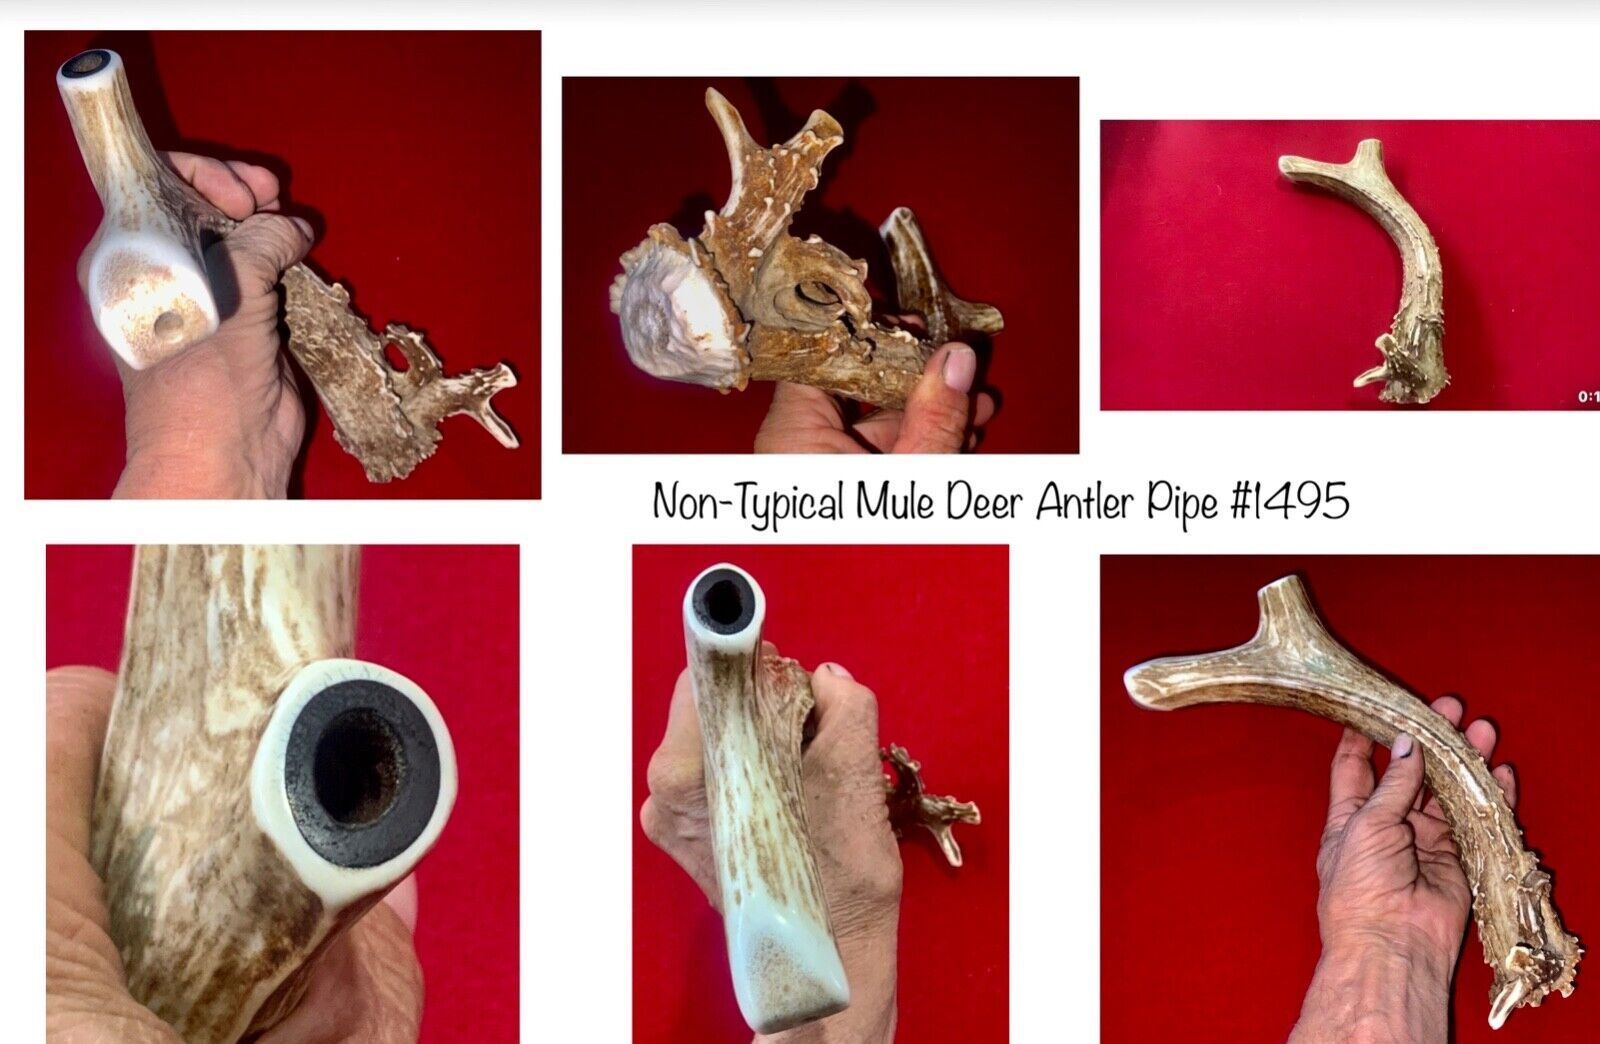 #1495 Non-Typical Mule Deer Antler smoking pipe